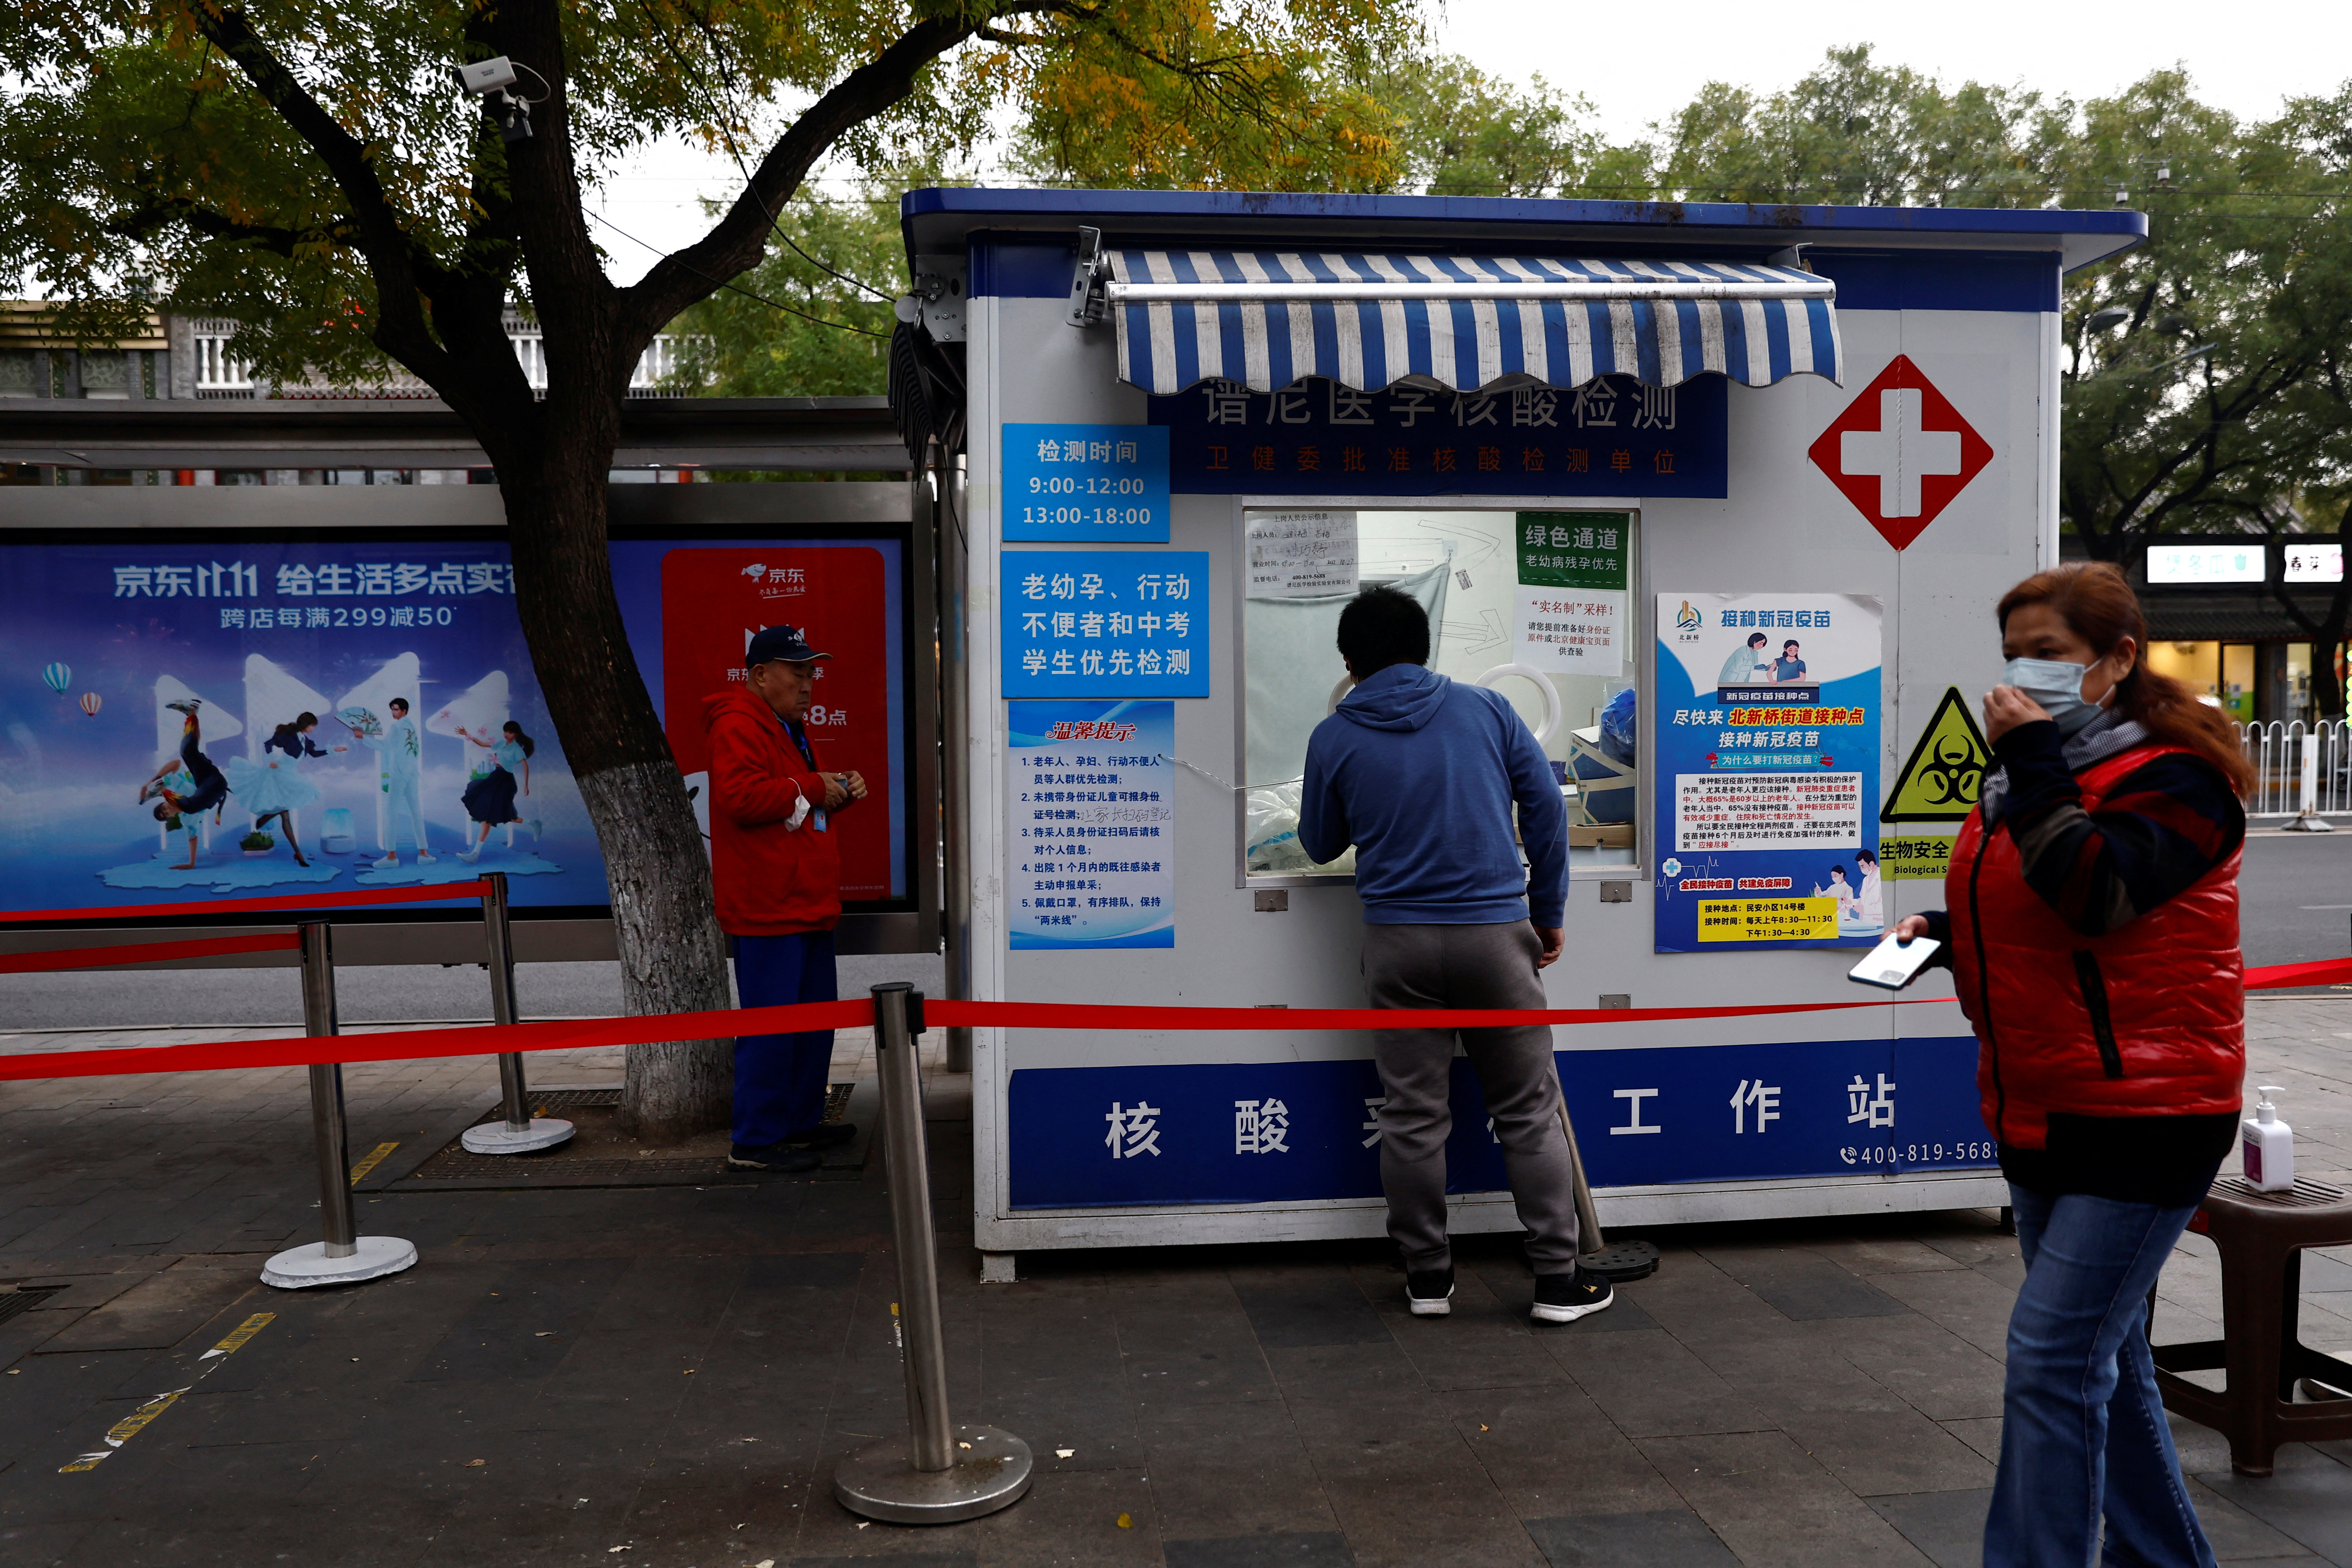 A un hombre se le toma un hisopado para una prueba de la enfermedad COVID-19 en una cabina de pruebas junto a una cartelera con publicidad para el festival de compras del día de los solteros, en Beijing, China, el 27 de octubre de 2022. REUTERS/Tingshu Wang